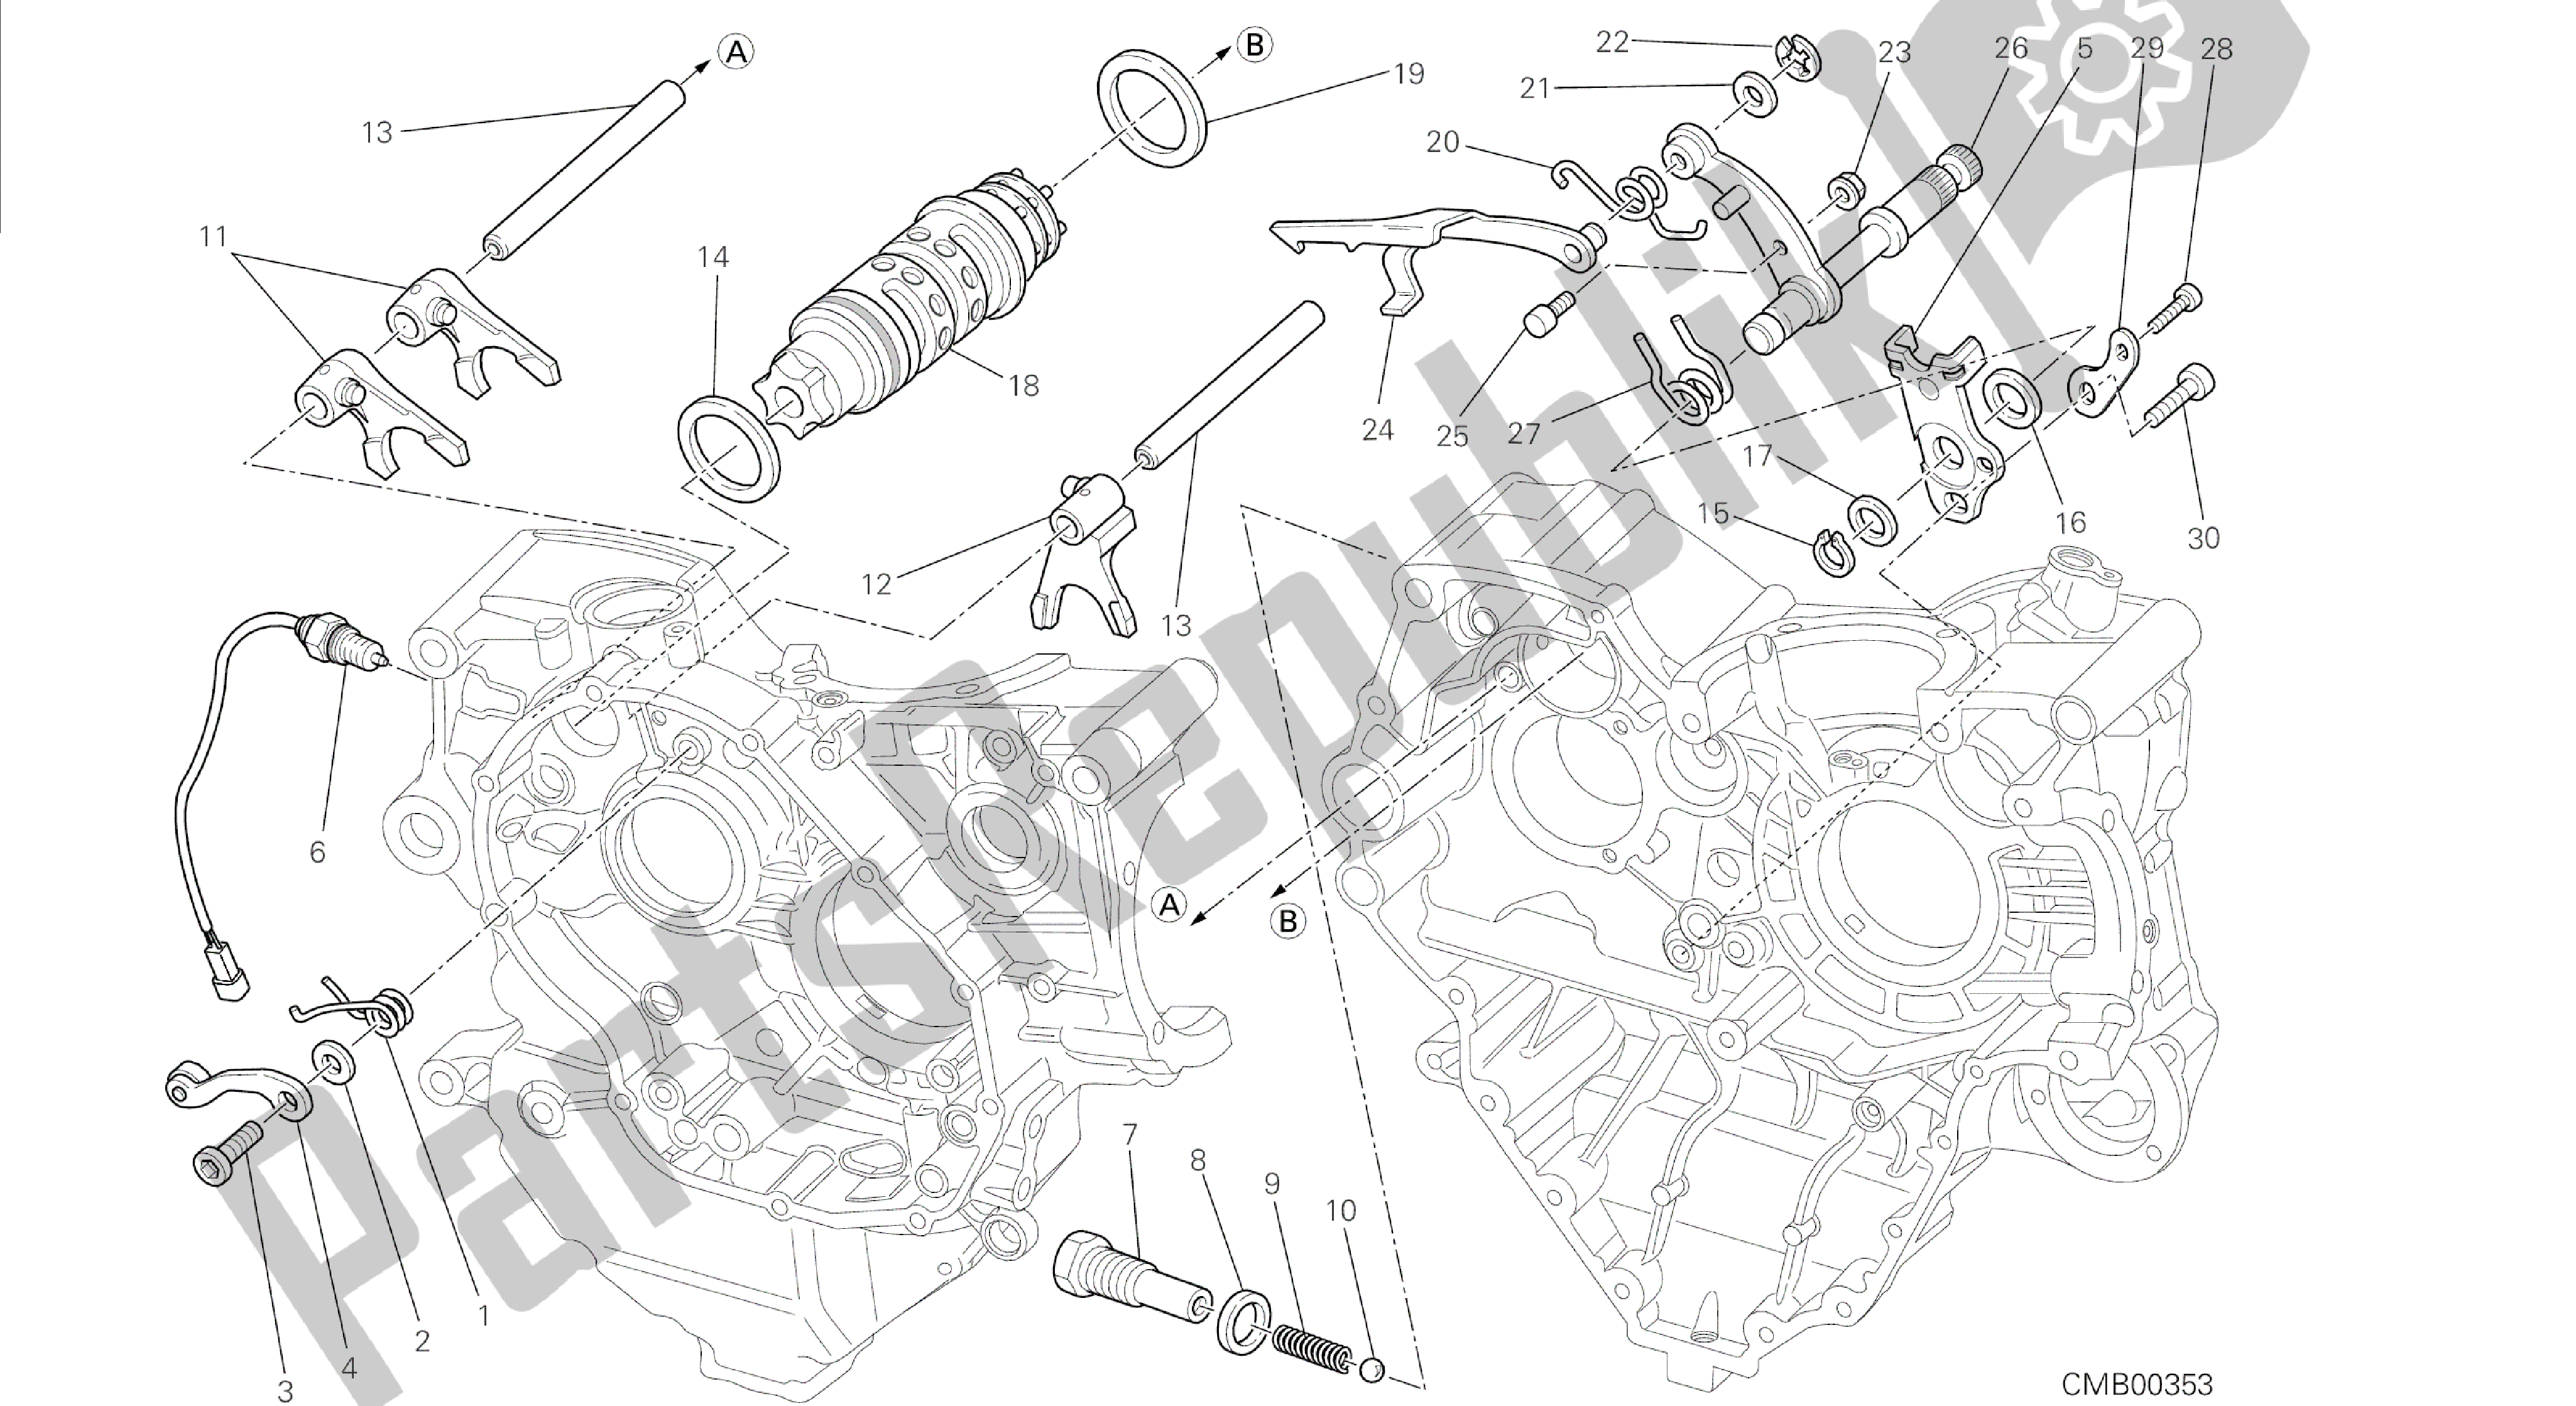 Toutes les pièces pour le Dessin 002 - Moteur De Groupe De Commande De Changement De Vitesse [mod: Dvl] du Ducati Diavel 1200 2014